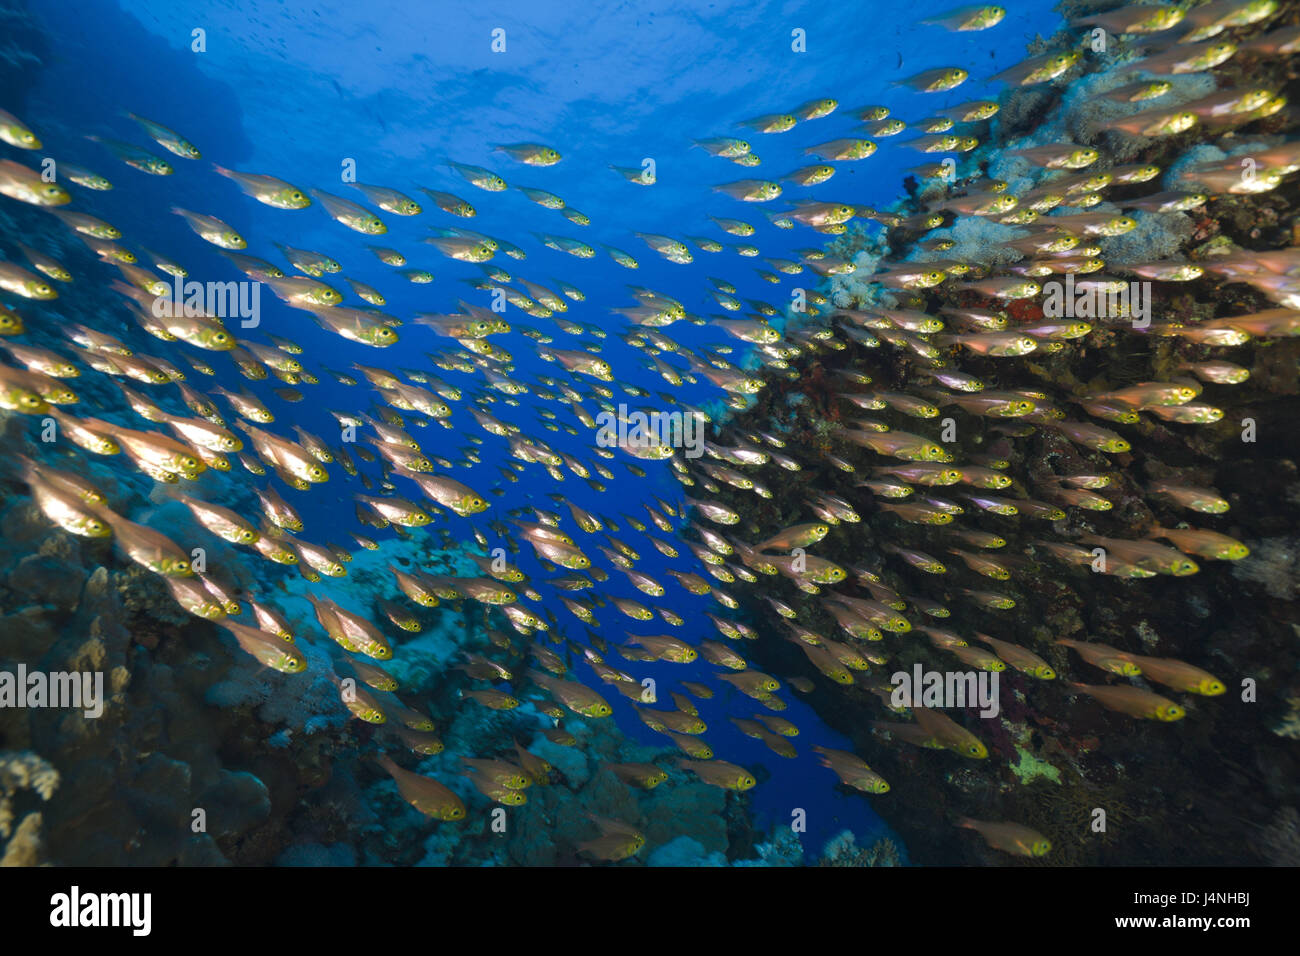 Korallenriff, Glasfische, beginnt Ransonneti, Ägypten, Tiere, Fische, marine Fische, Fisch-Traum, Traumfisch, Unterwasser Aufnahme, Riff, Korallen, Stockfoto